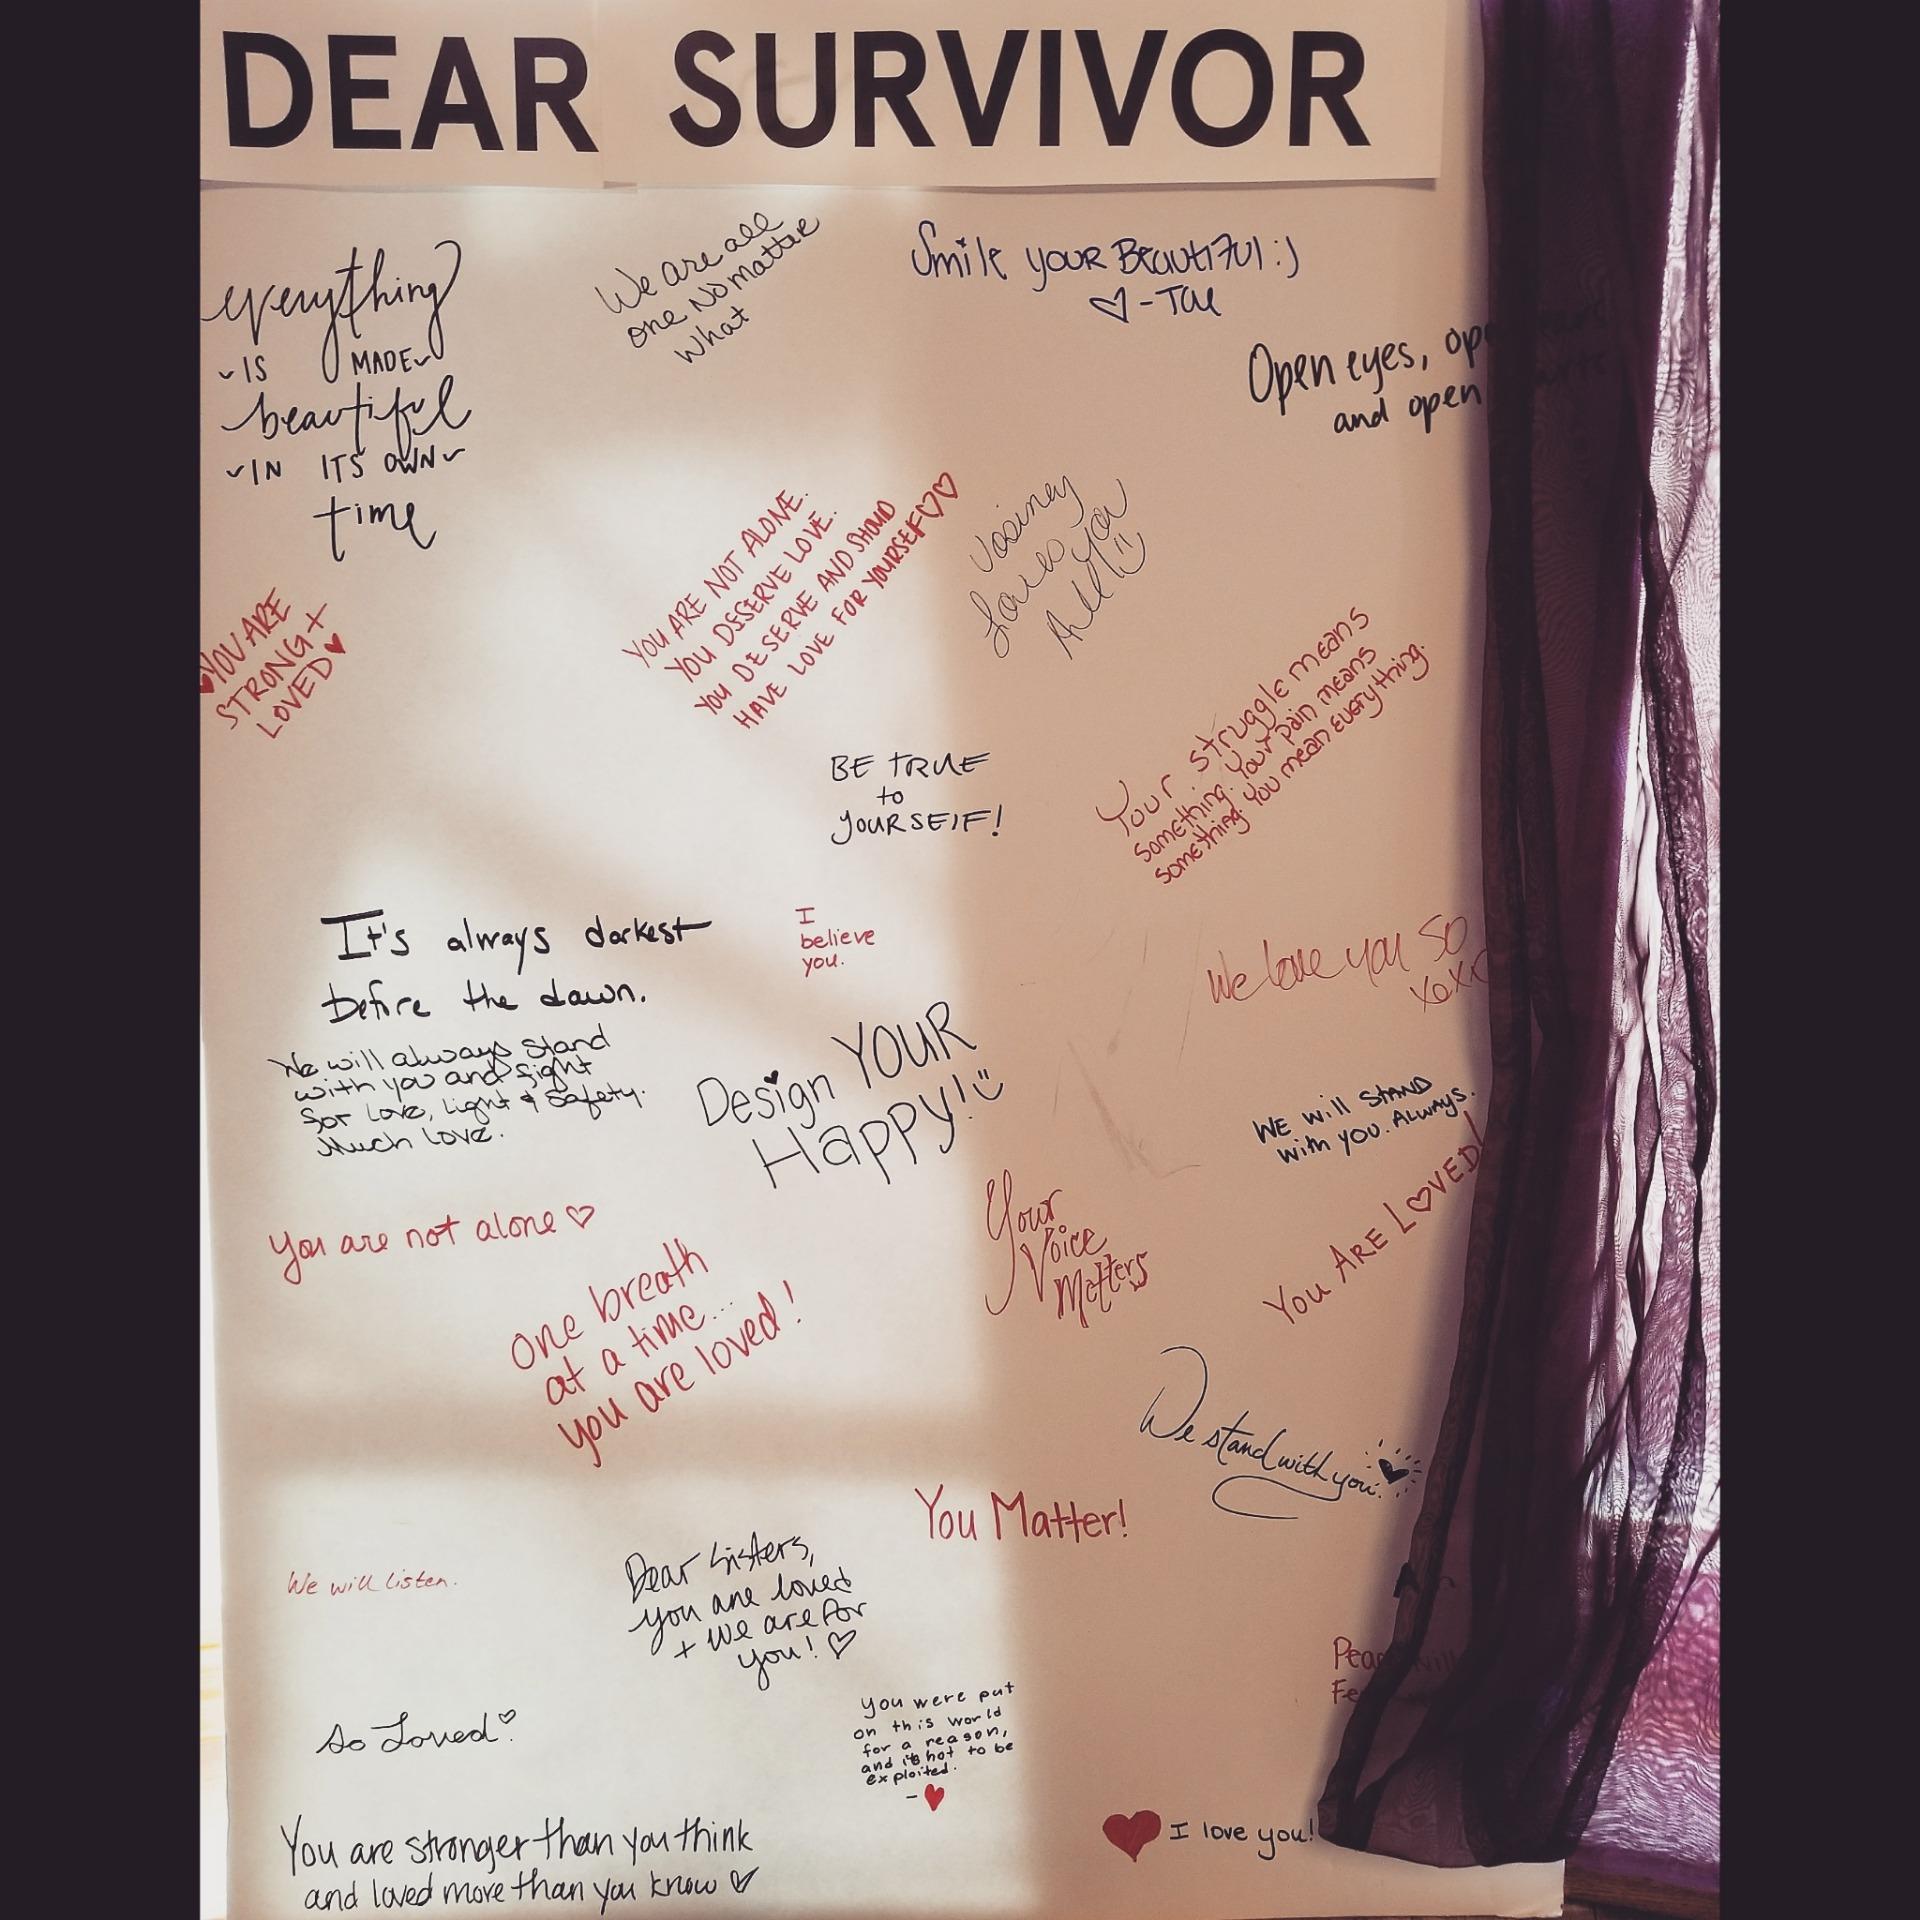 A letter to a Survivor